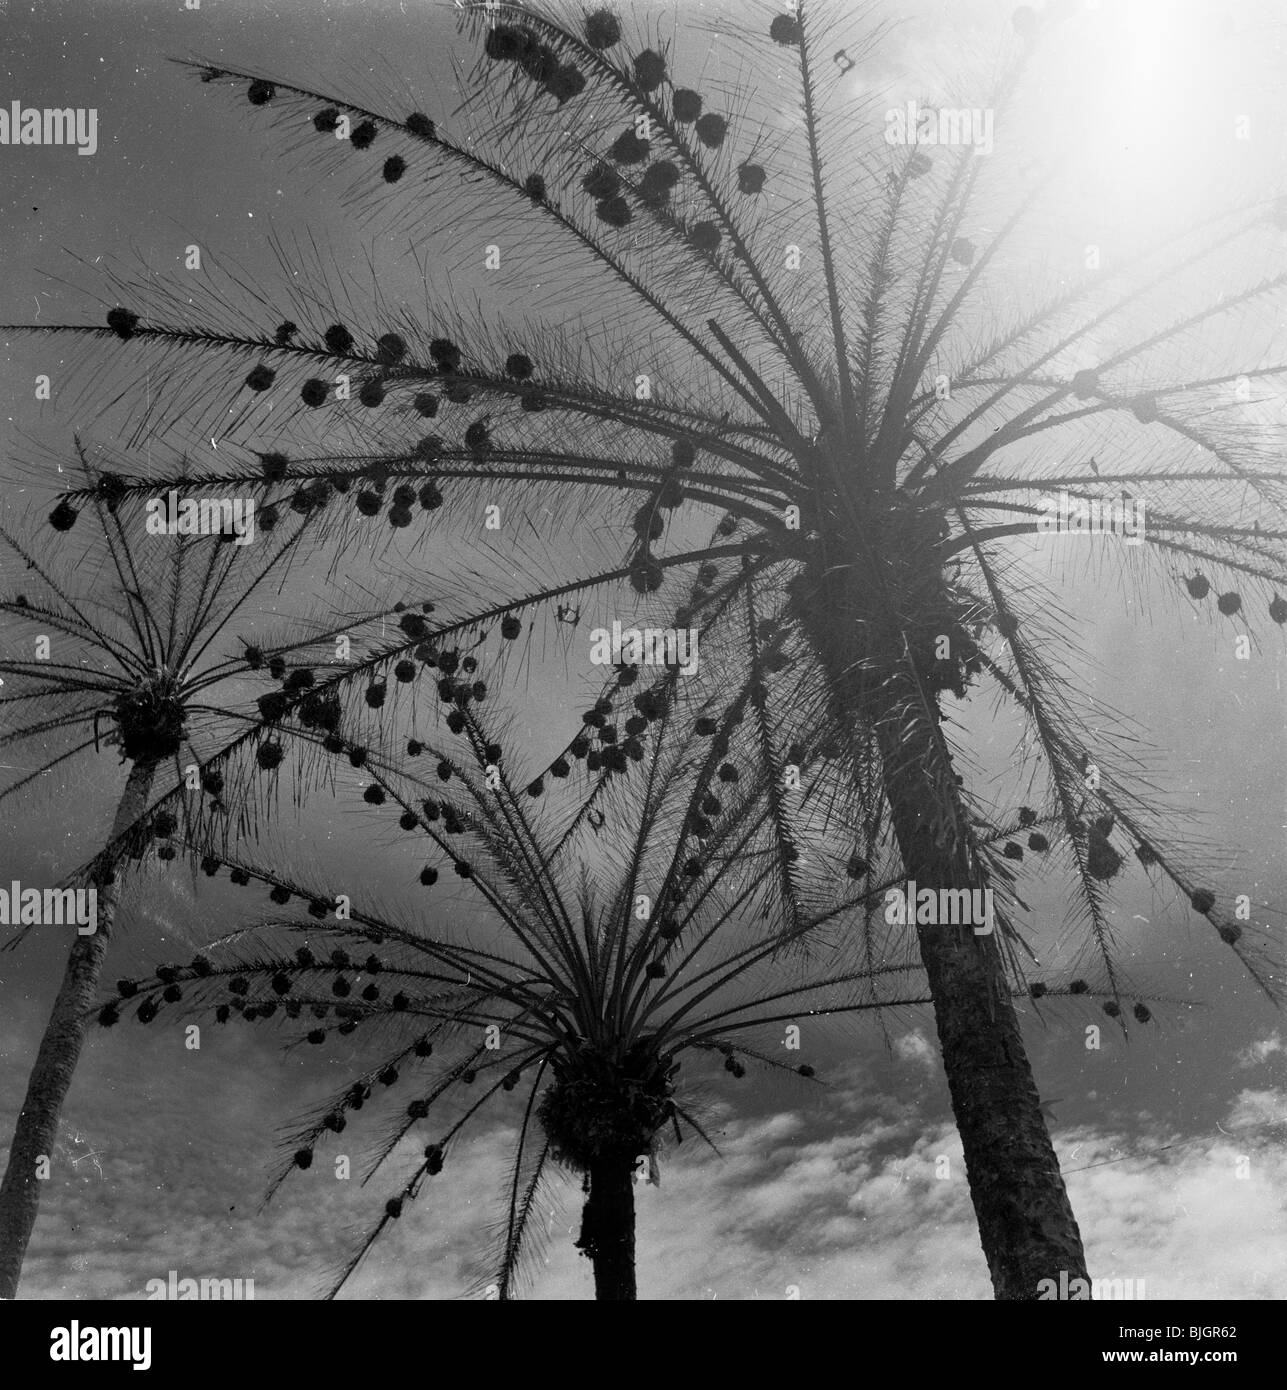 In questa immagine da J Allan contanti possiamo vedere da sotto il sole splende attraverso gli alberi di noce di cocco o di palme, Nigeria, Africa, 1950s. Foto Stock